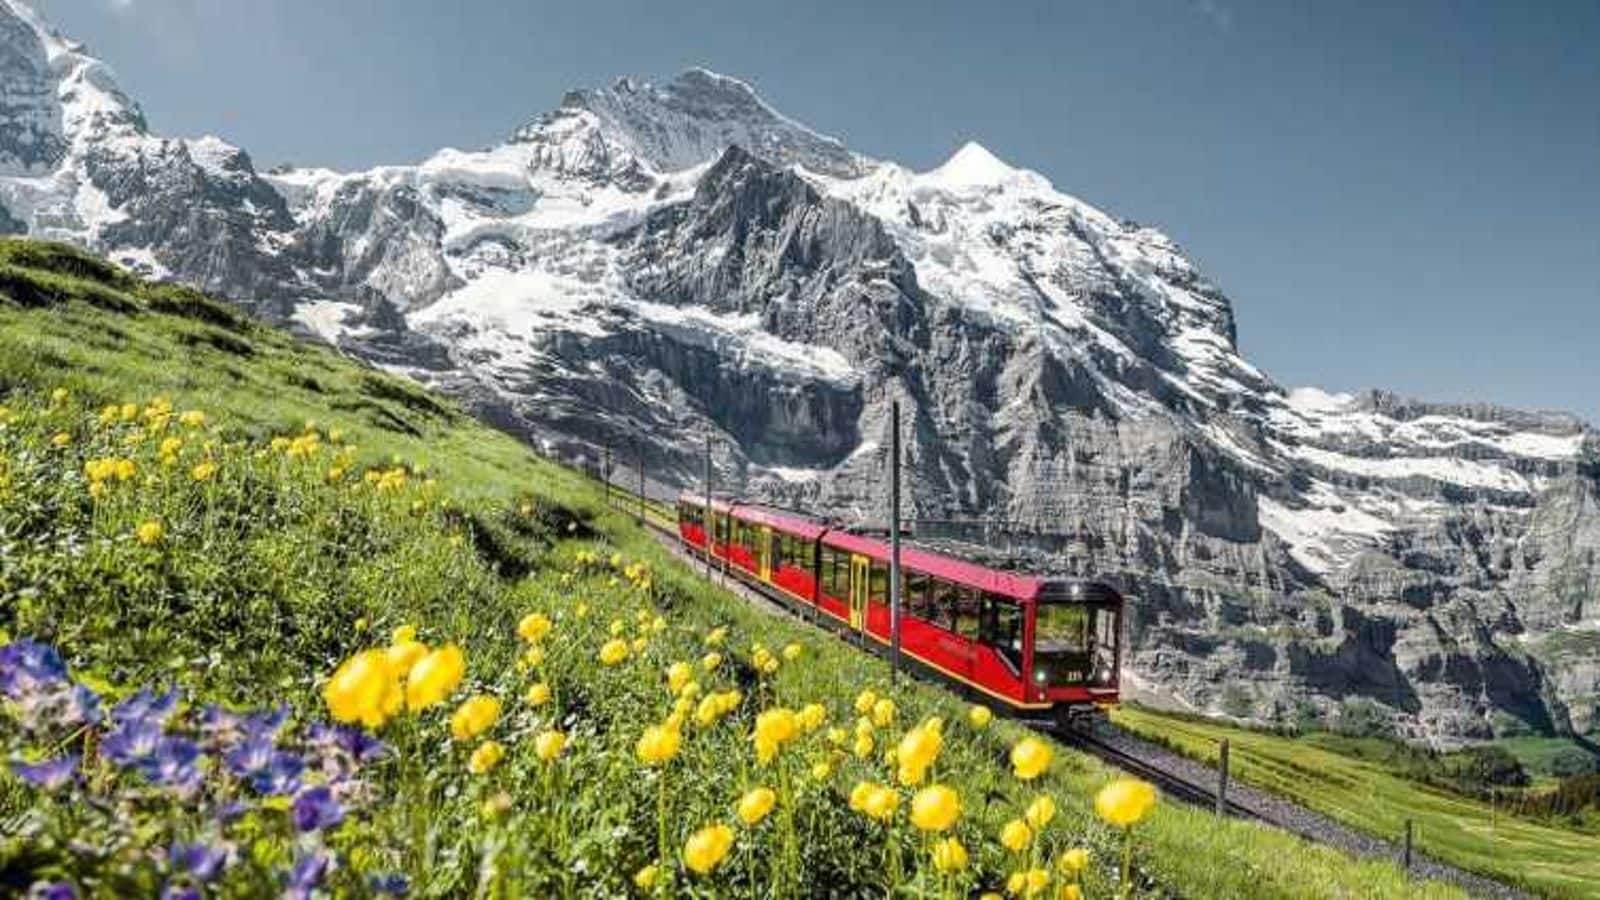 Witness the Swiss Alps in Interlaken with these adventurous activities